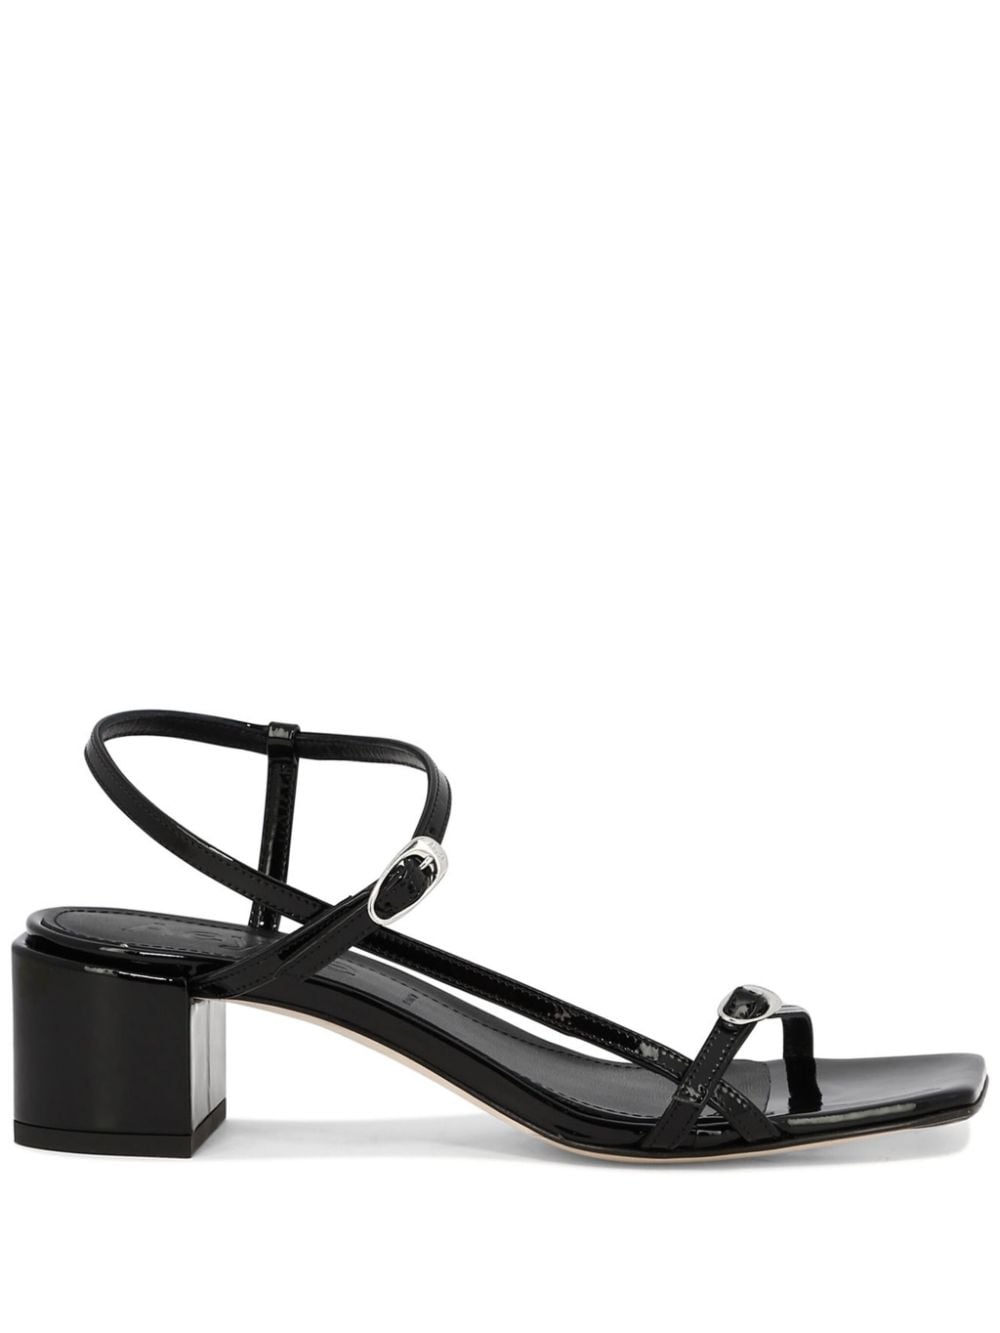 Aeyde Tash 45mm leather slingback sandals Black